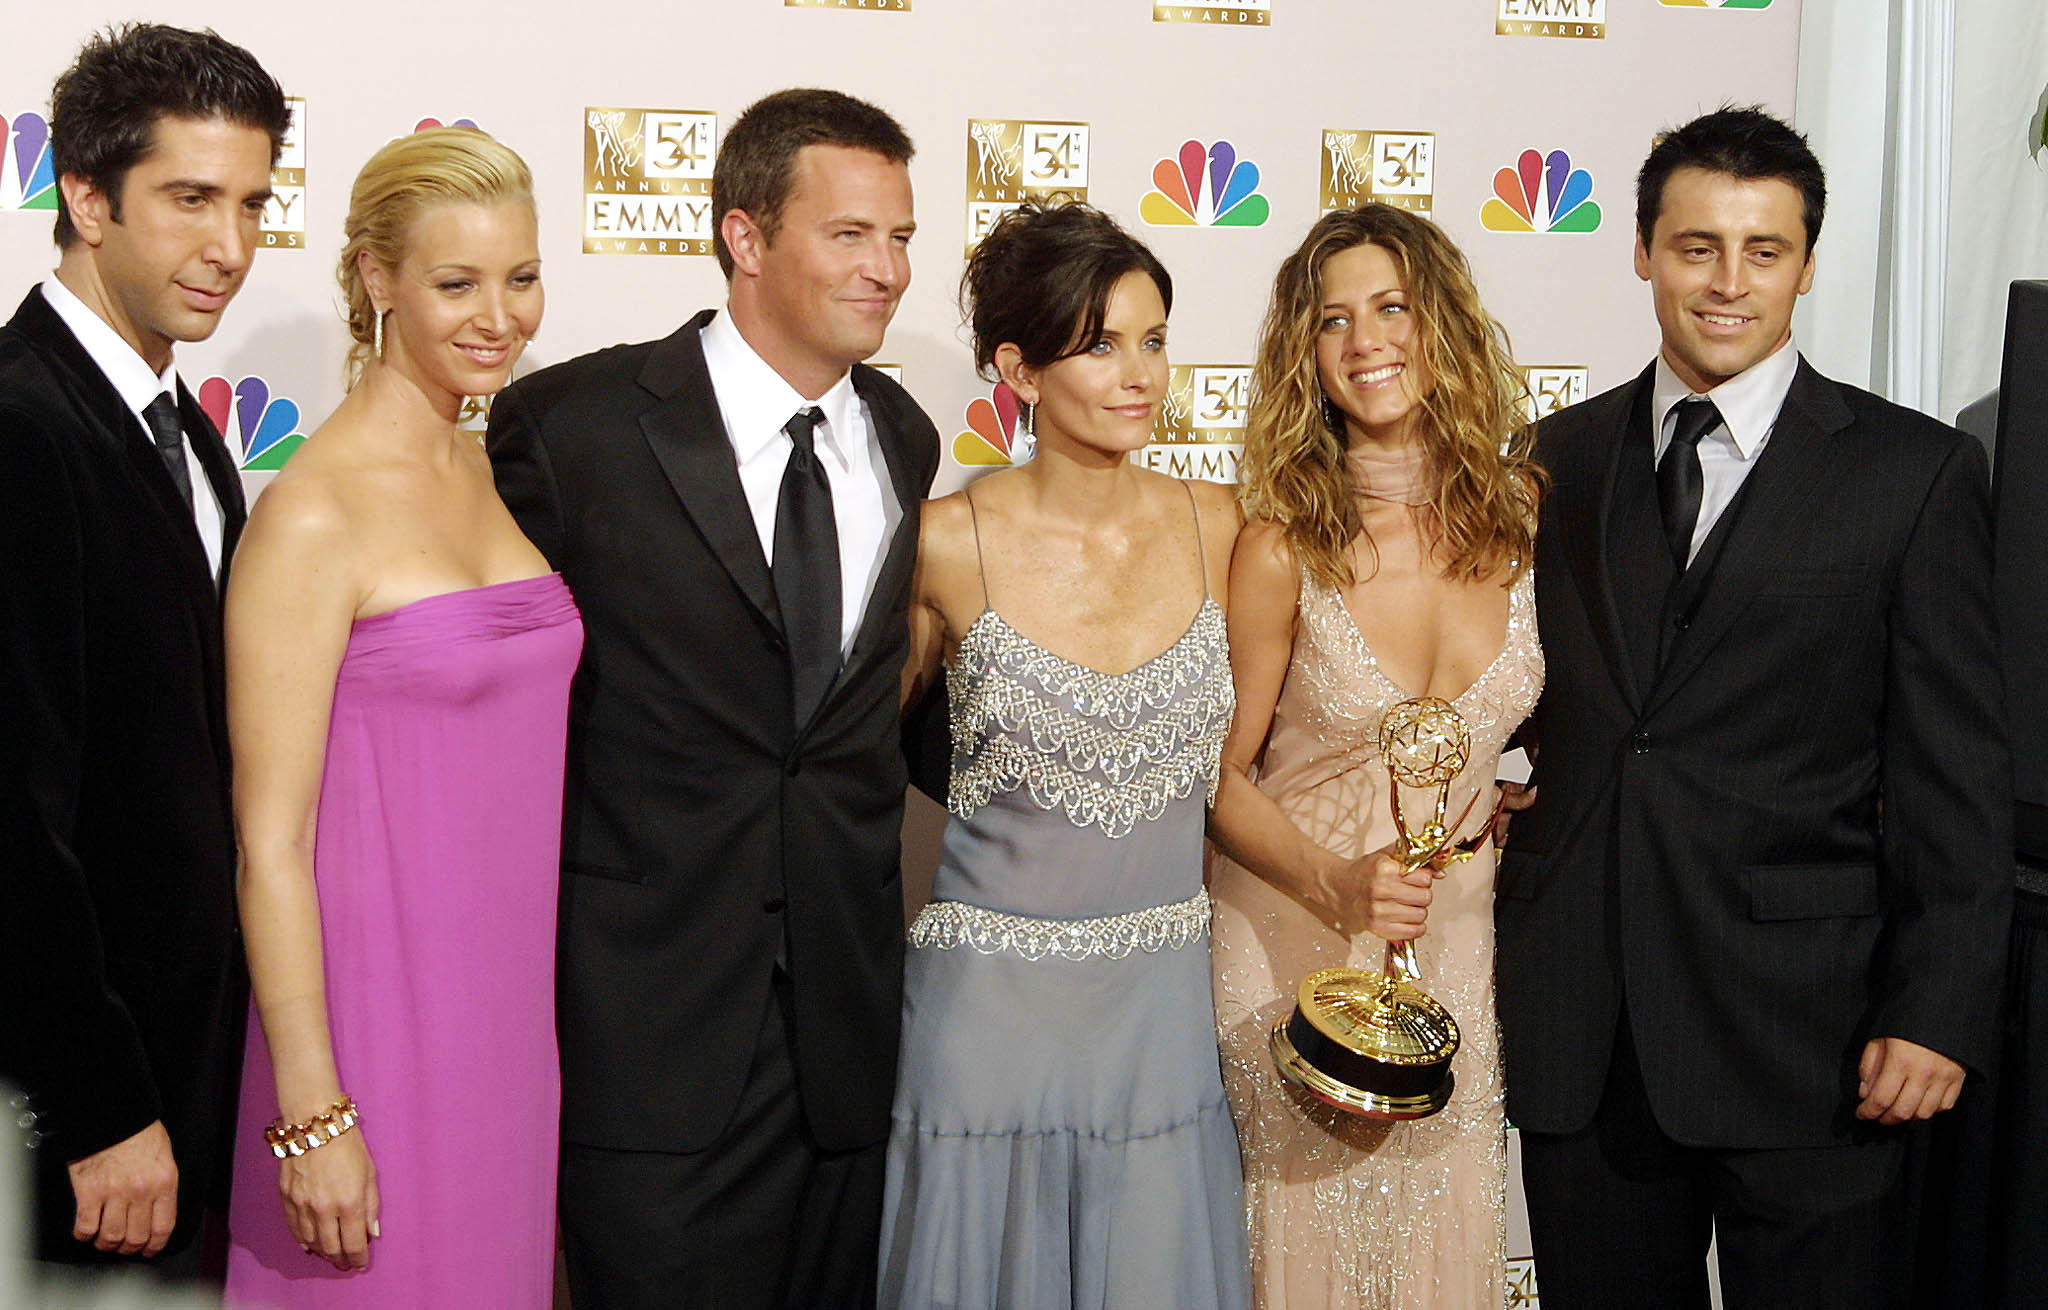 "Friends" ganó la serie de comedia sobresaliente y sus protagonistas se reencontrarán. (Foto Prensa Libre: AFP)